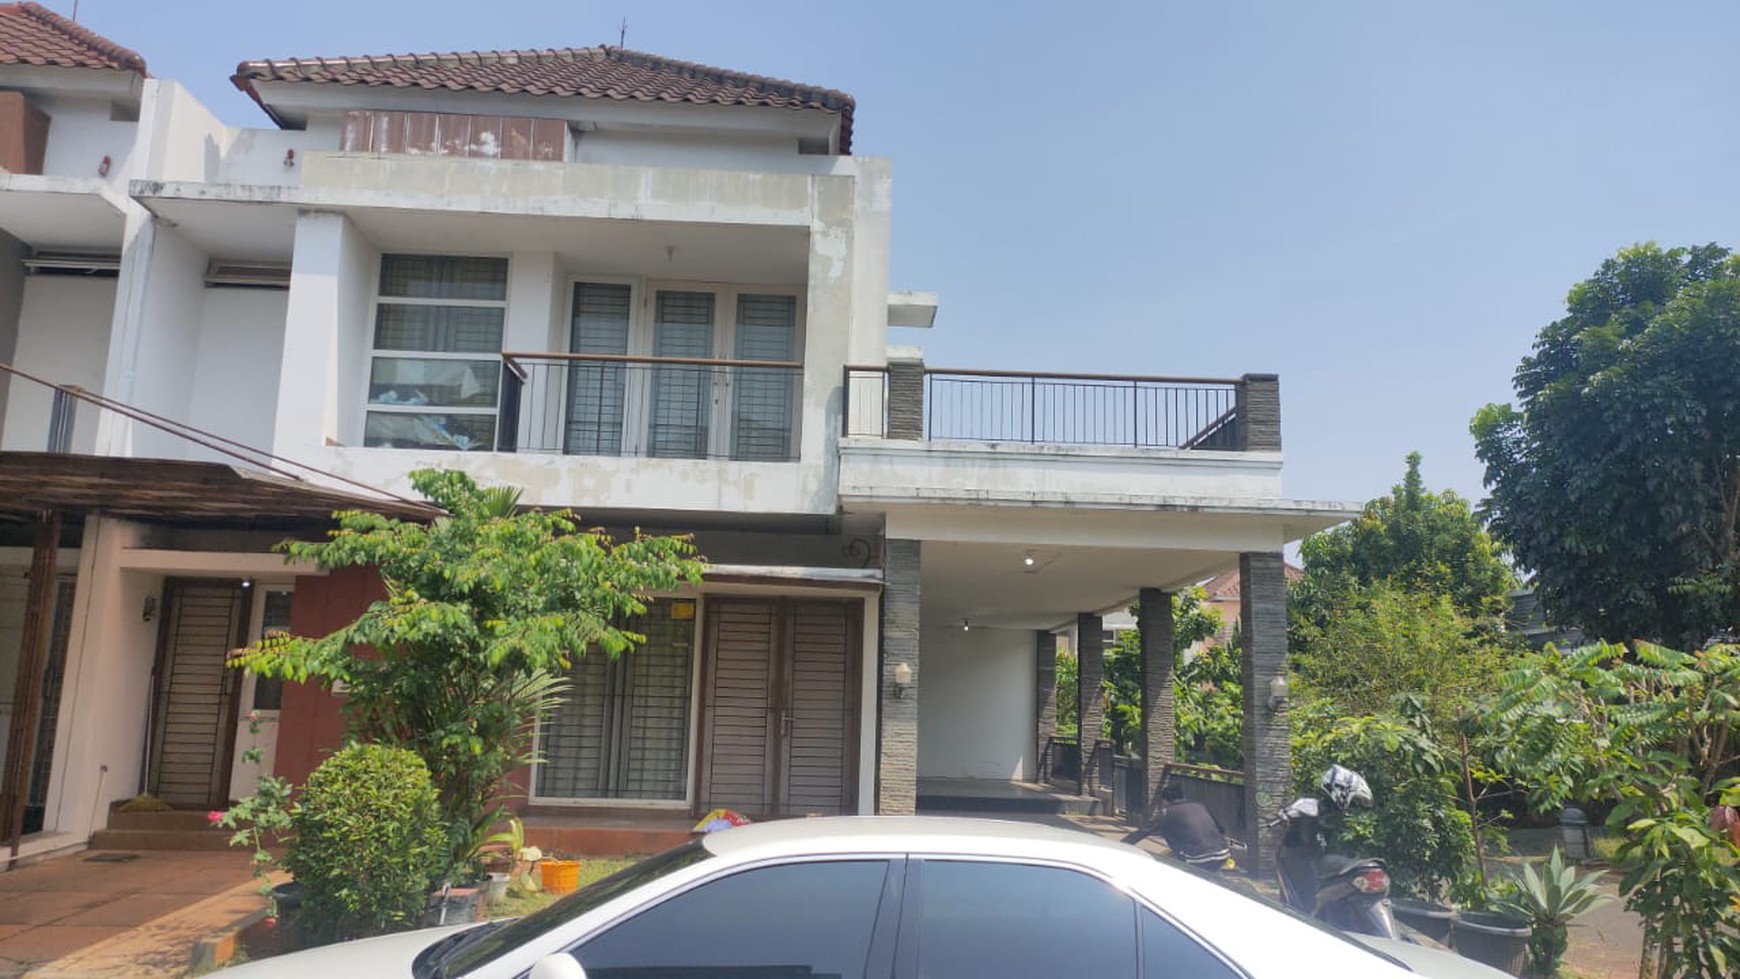 Raffles Hills Cibubur, 2 lantai, siap huni, mewah, lokasi strategis, bisa KPR, harga nego